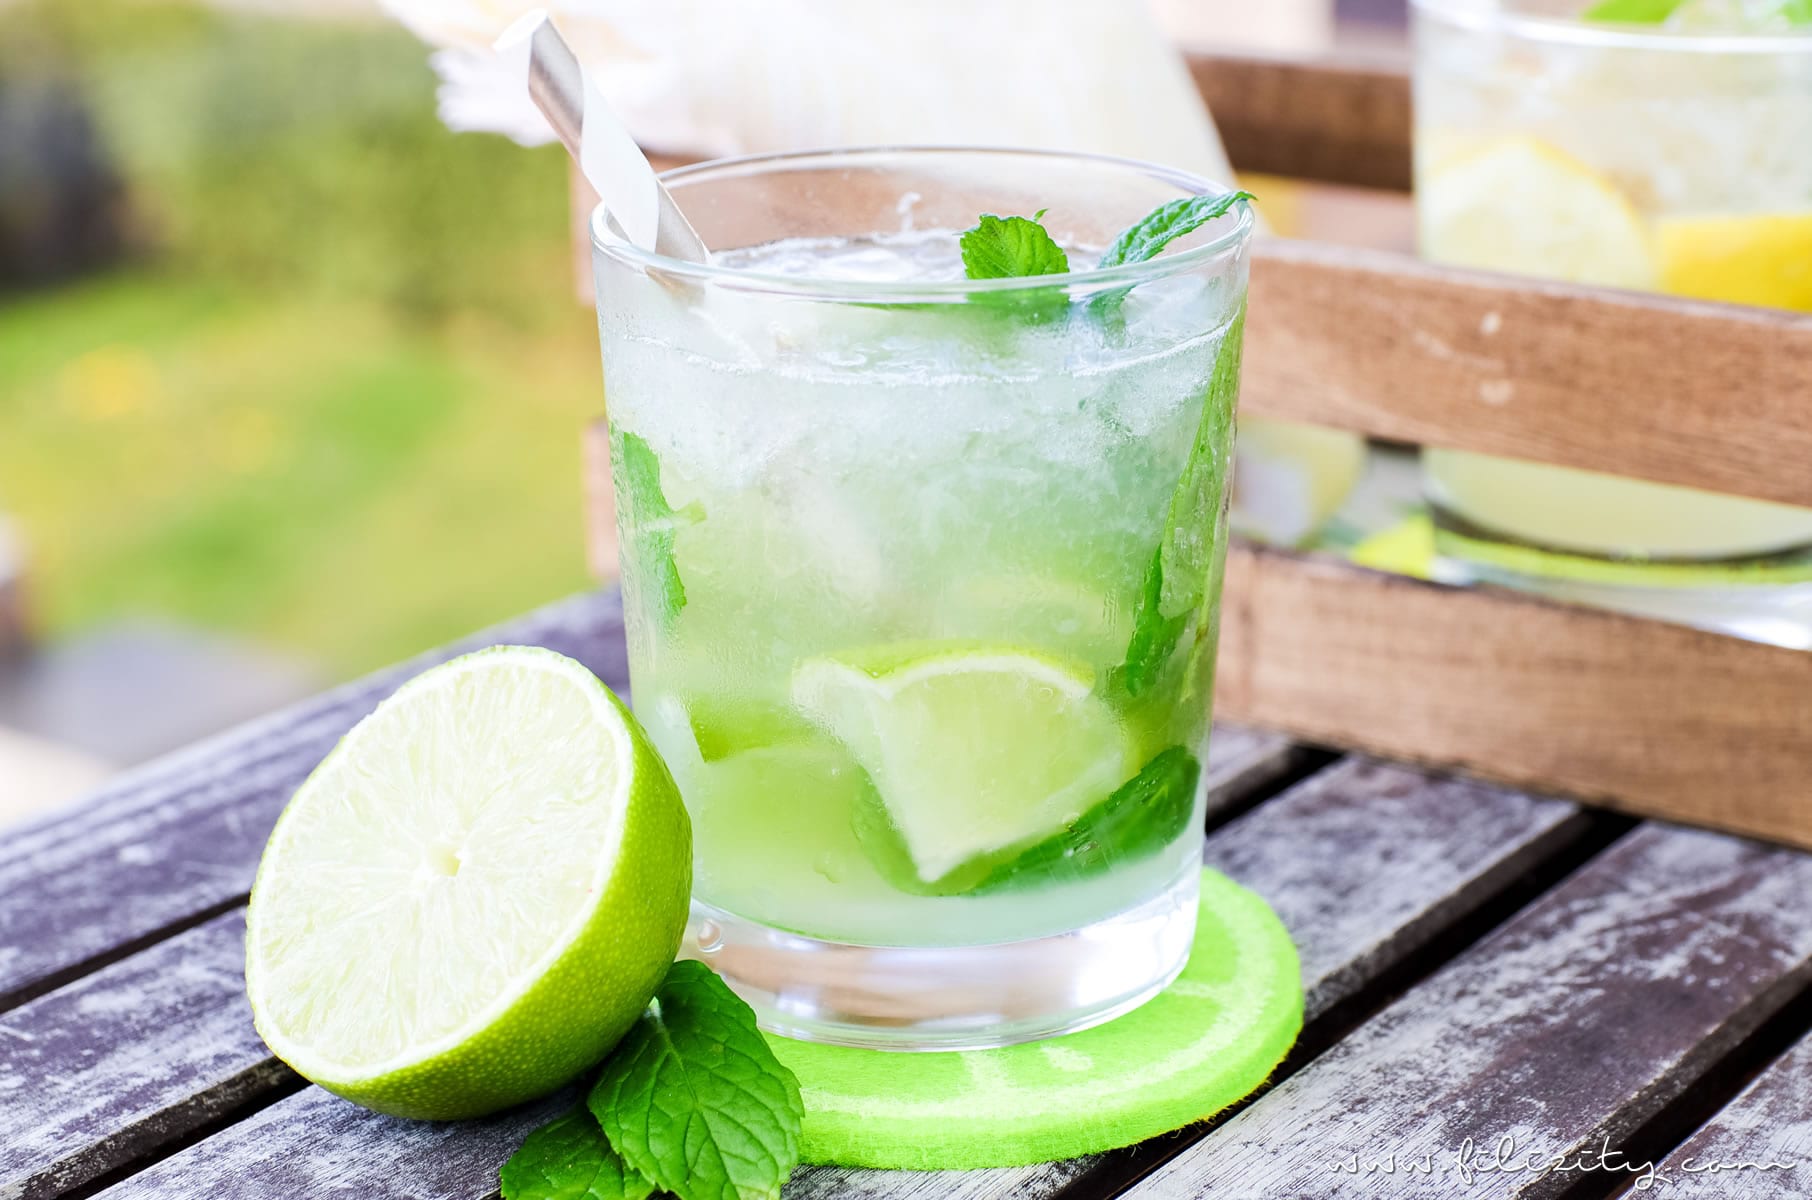 Mojito Rezept - Kubanischer Cocktail-Klassiker zum Selber Mixen | Erfrischender Sommer-Drink | Filizity.com | Food-Blog aus dem Rheinland #mojito #cocktail #sommer